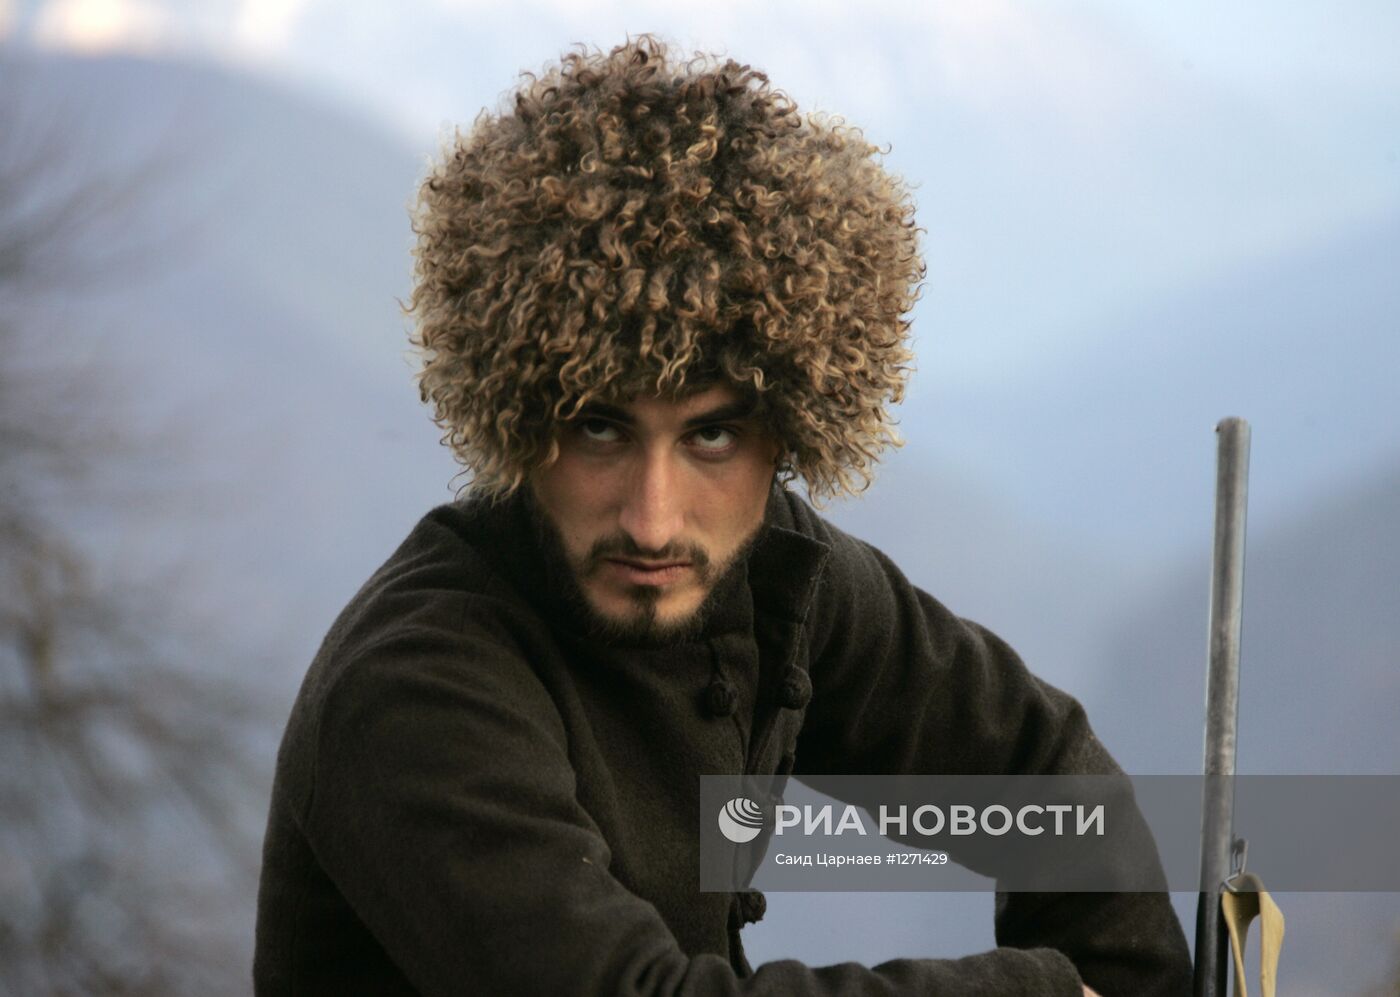 Съемки фильма Х.Эркенова "Пепел" начались в Чечне